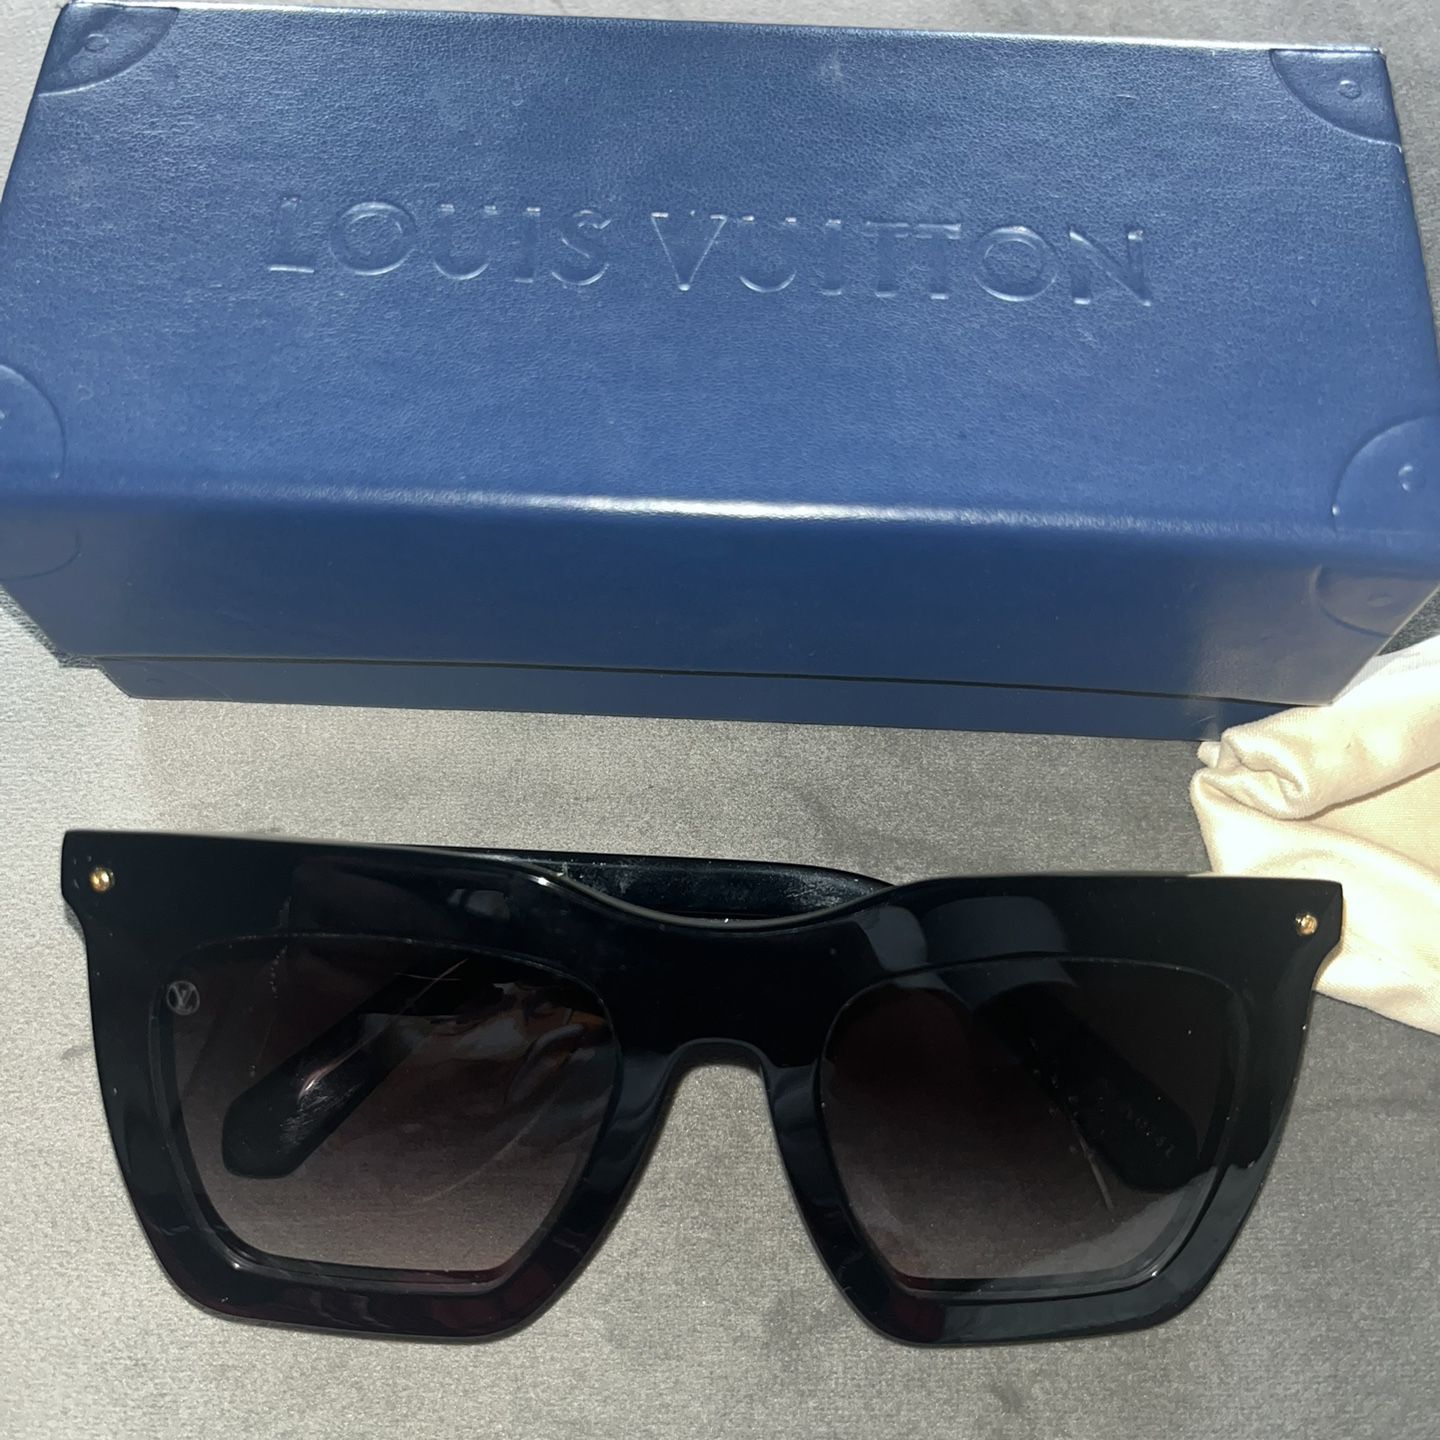 Louis Vuitton My LV Chain Two Classique Square Sunglasses Havana Plastic. Size U